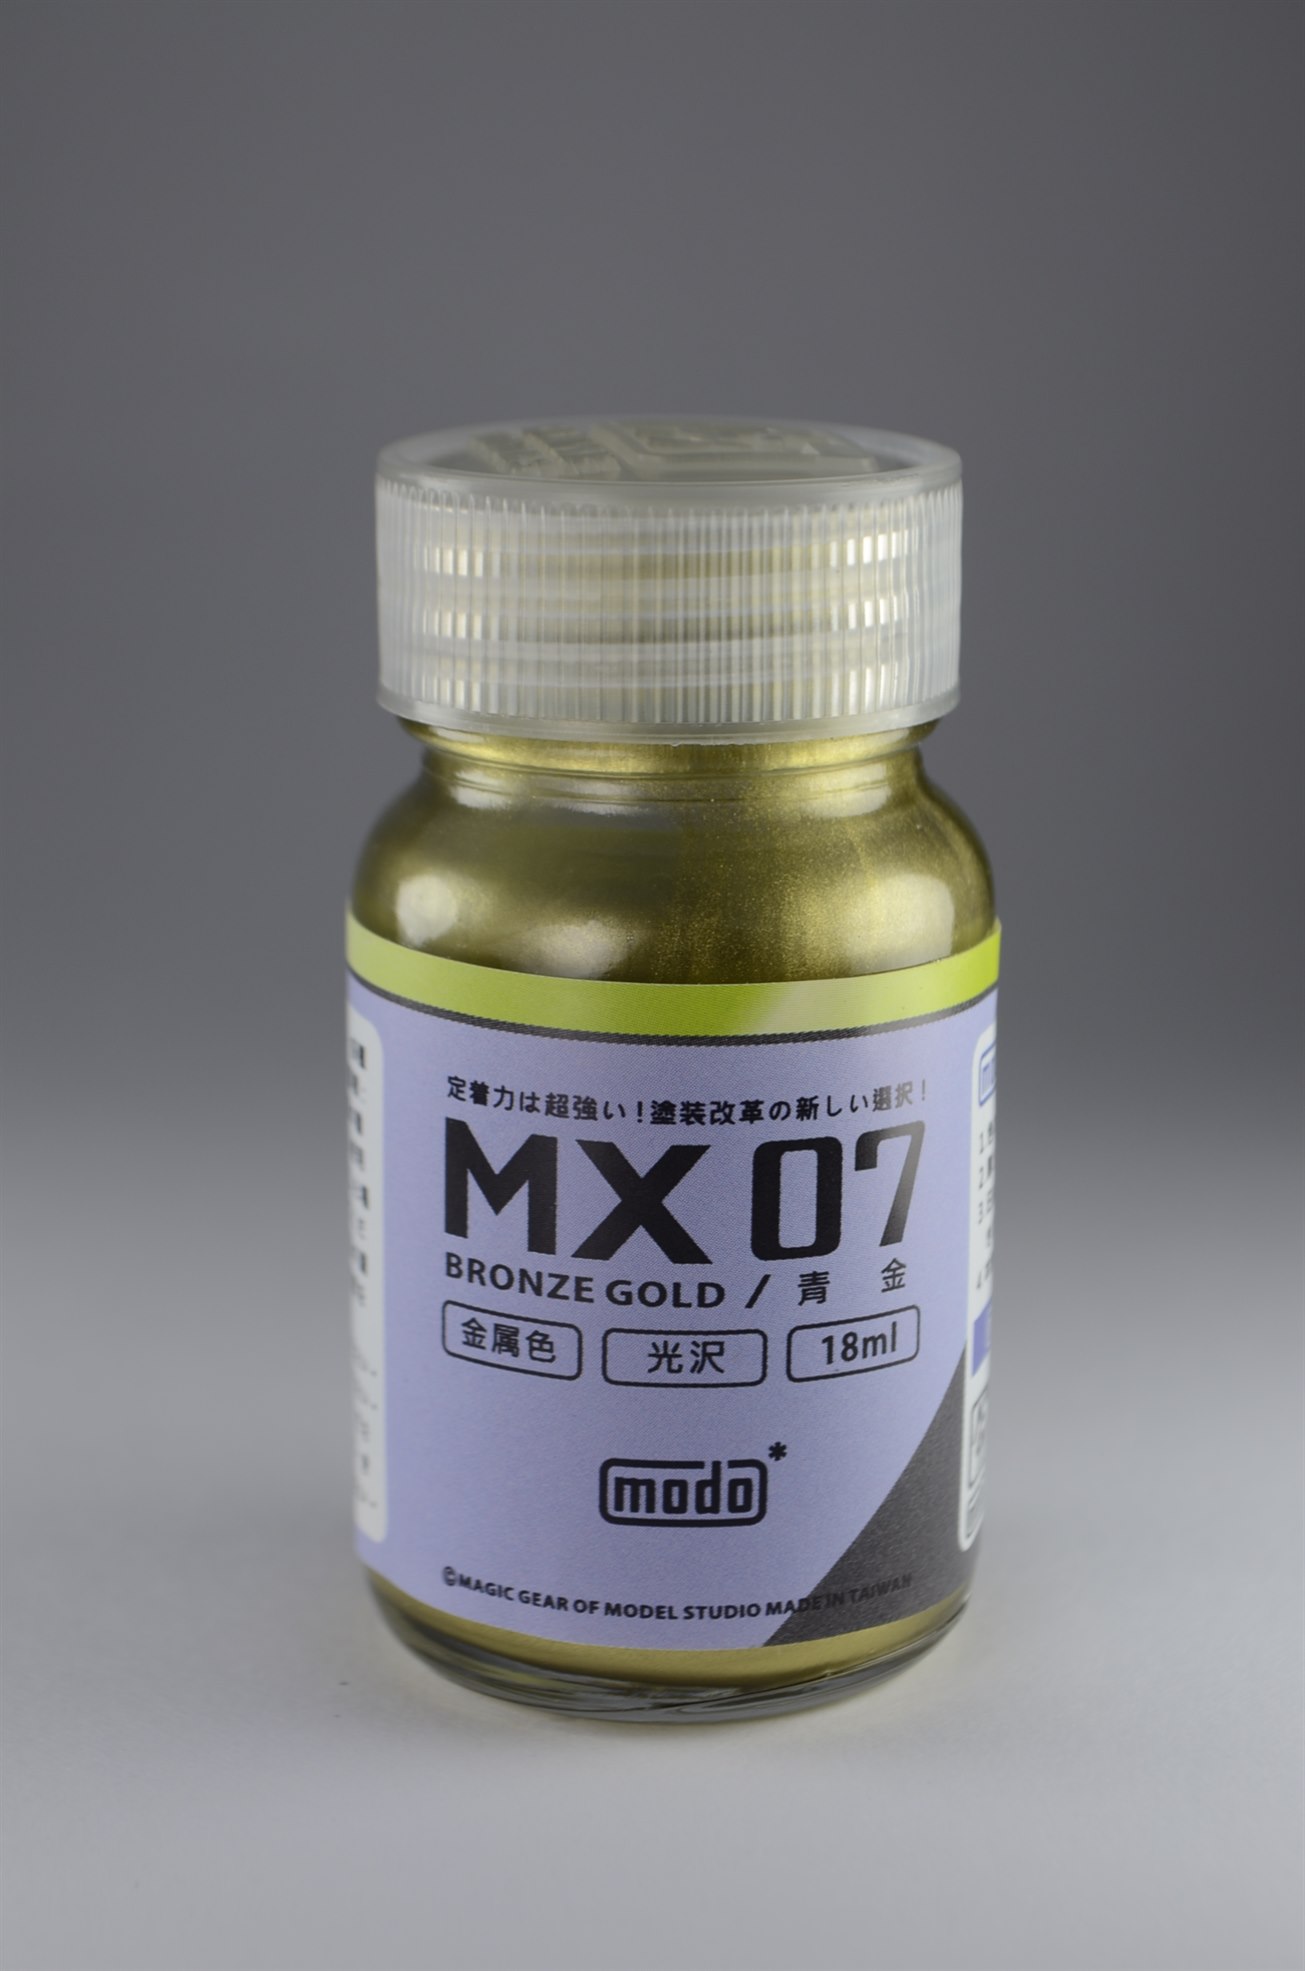 MODO MX-07 BRONZE GOLD 18ML